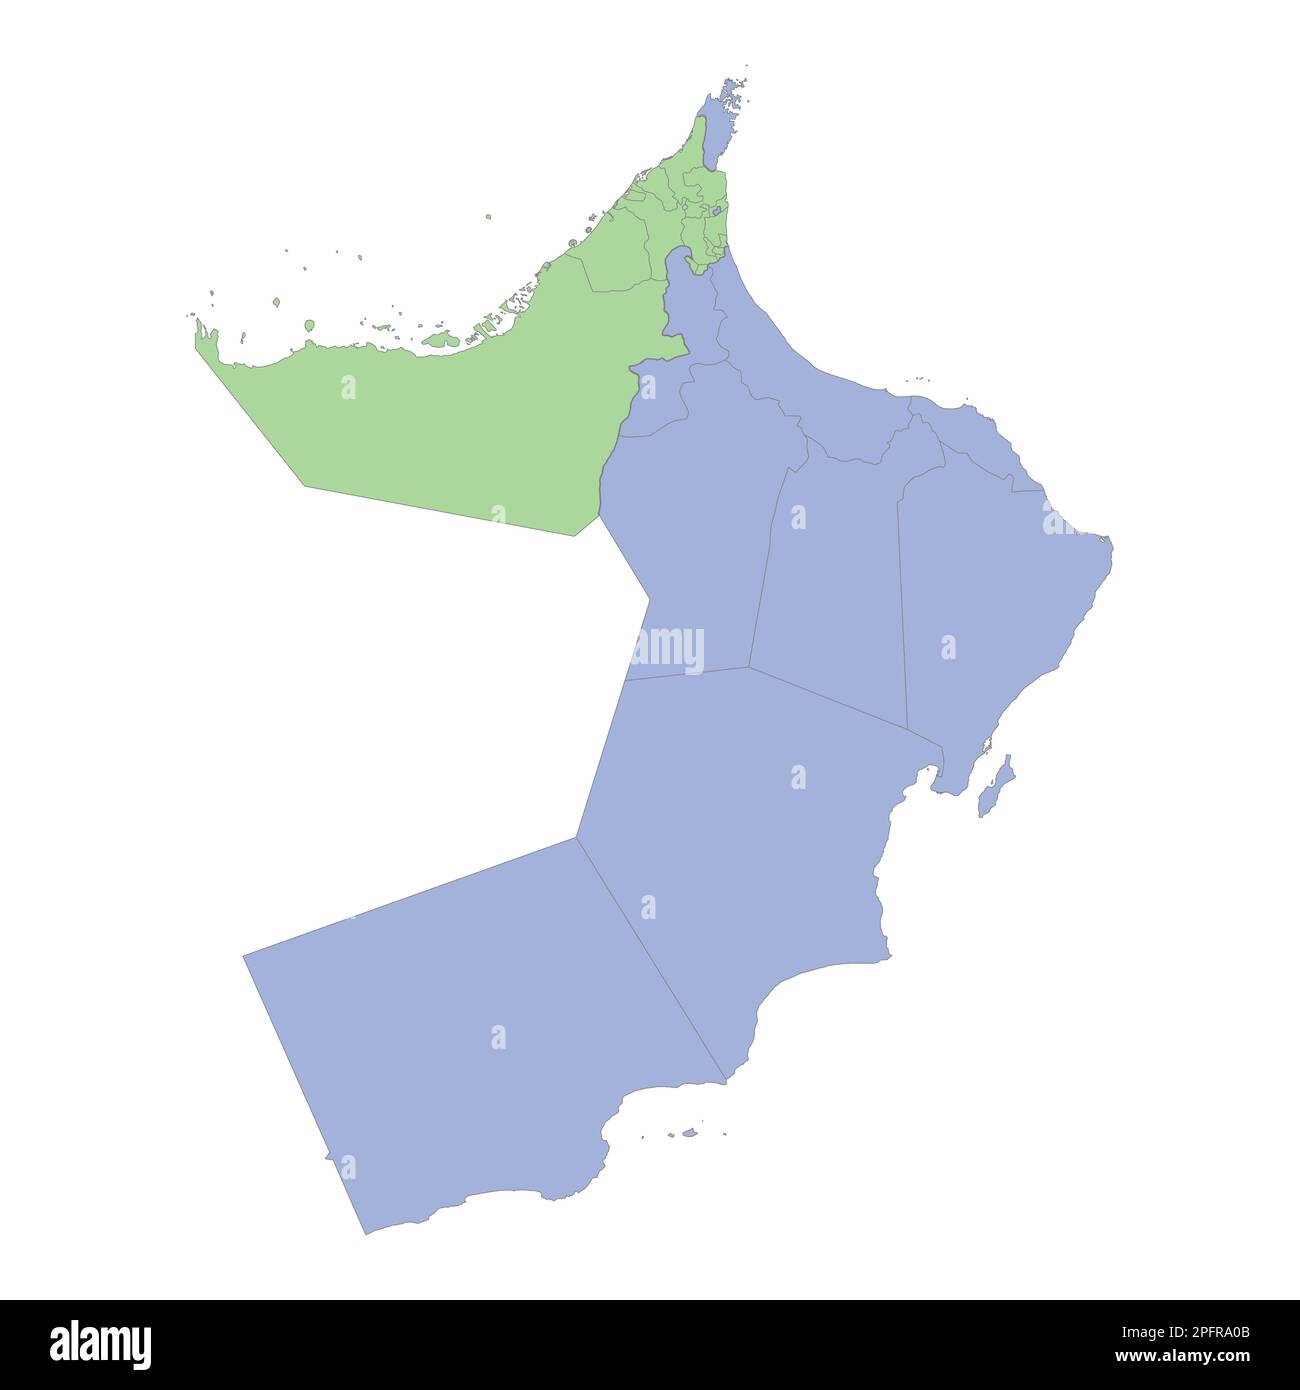 Mappa politica di alta qualità degli Emirati Arabi Uniti e dell'Oman con i confini delle regioni o delle province. Illustrazione vettoriale Illustrazione Vettoriale